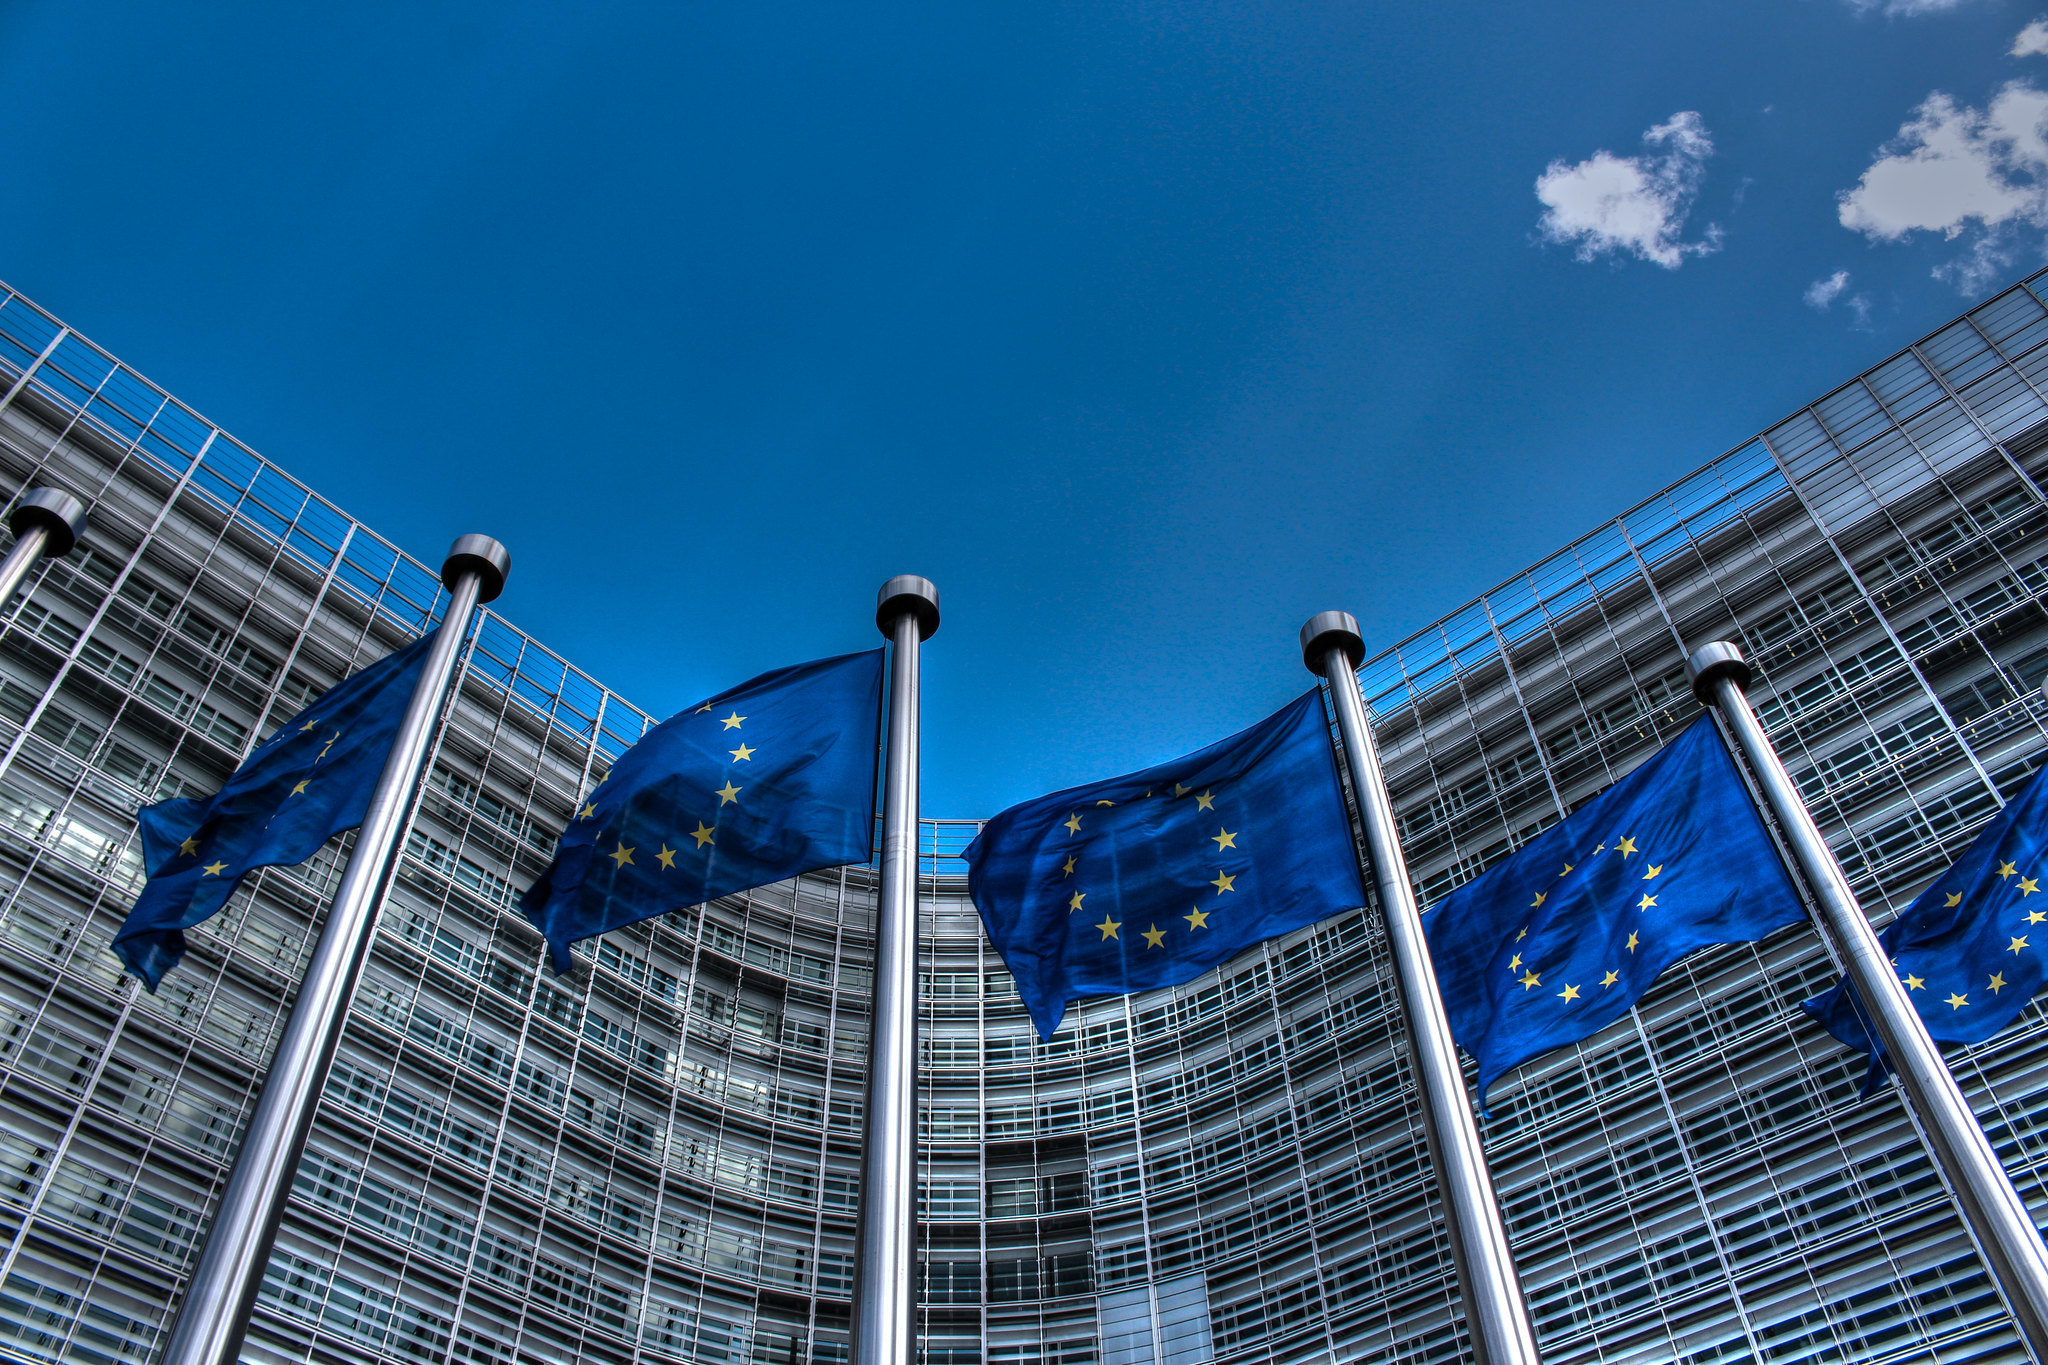 La direttiva UE sulla “due diligence” per la sostenibilità delle imprese sia applicata al settore armamenti